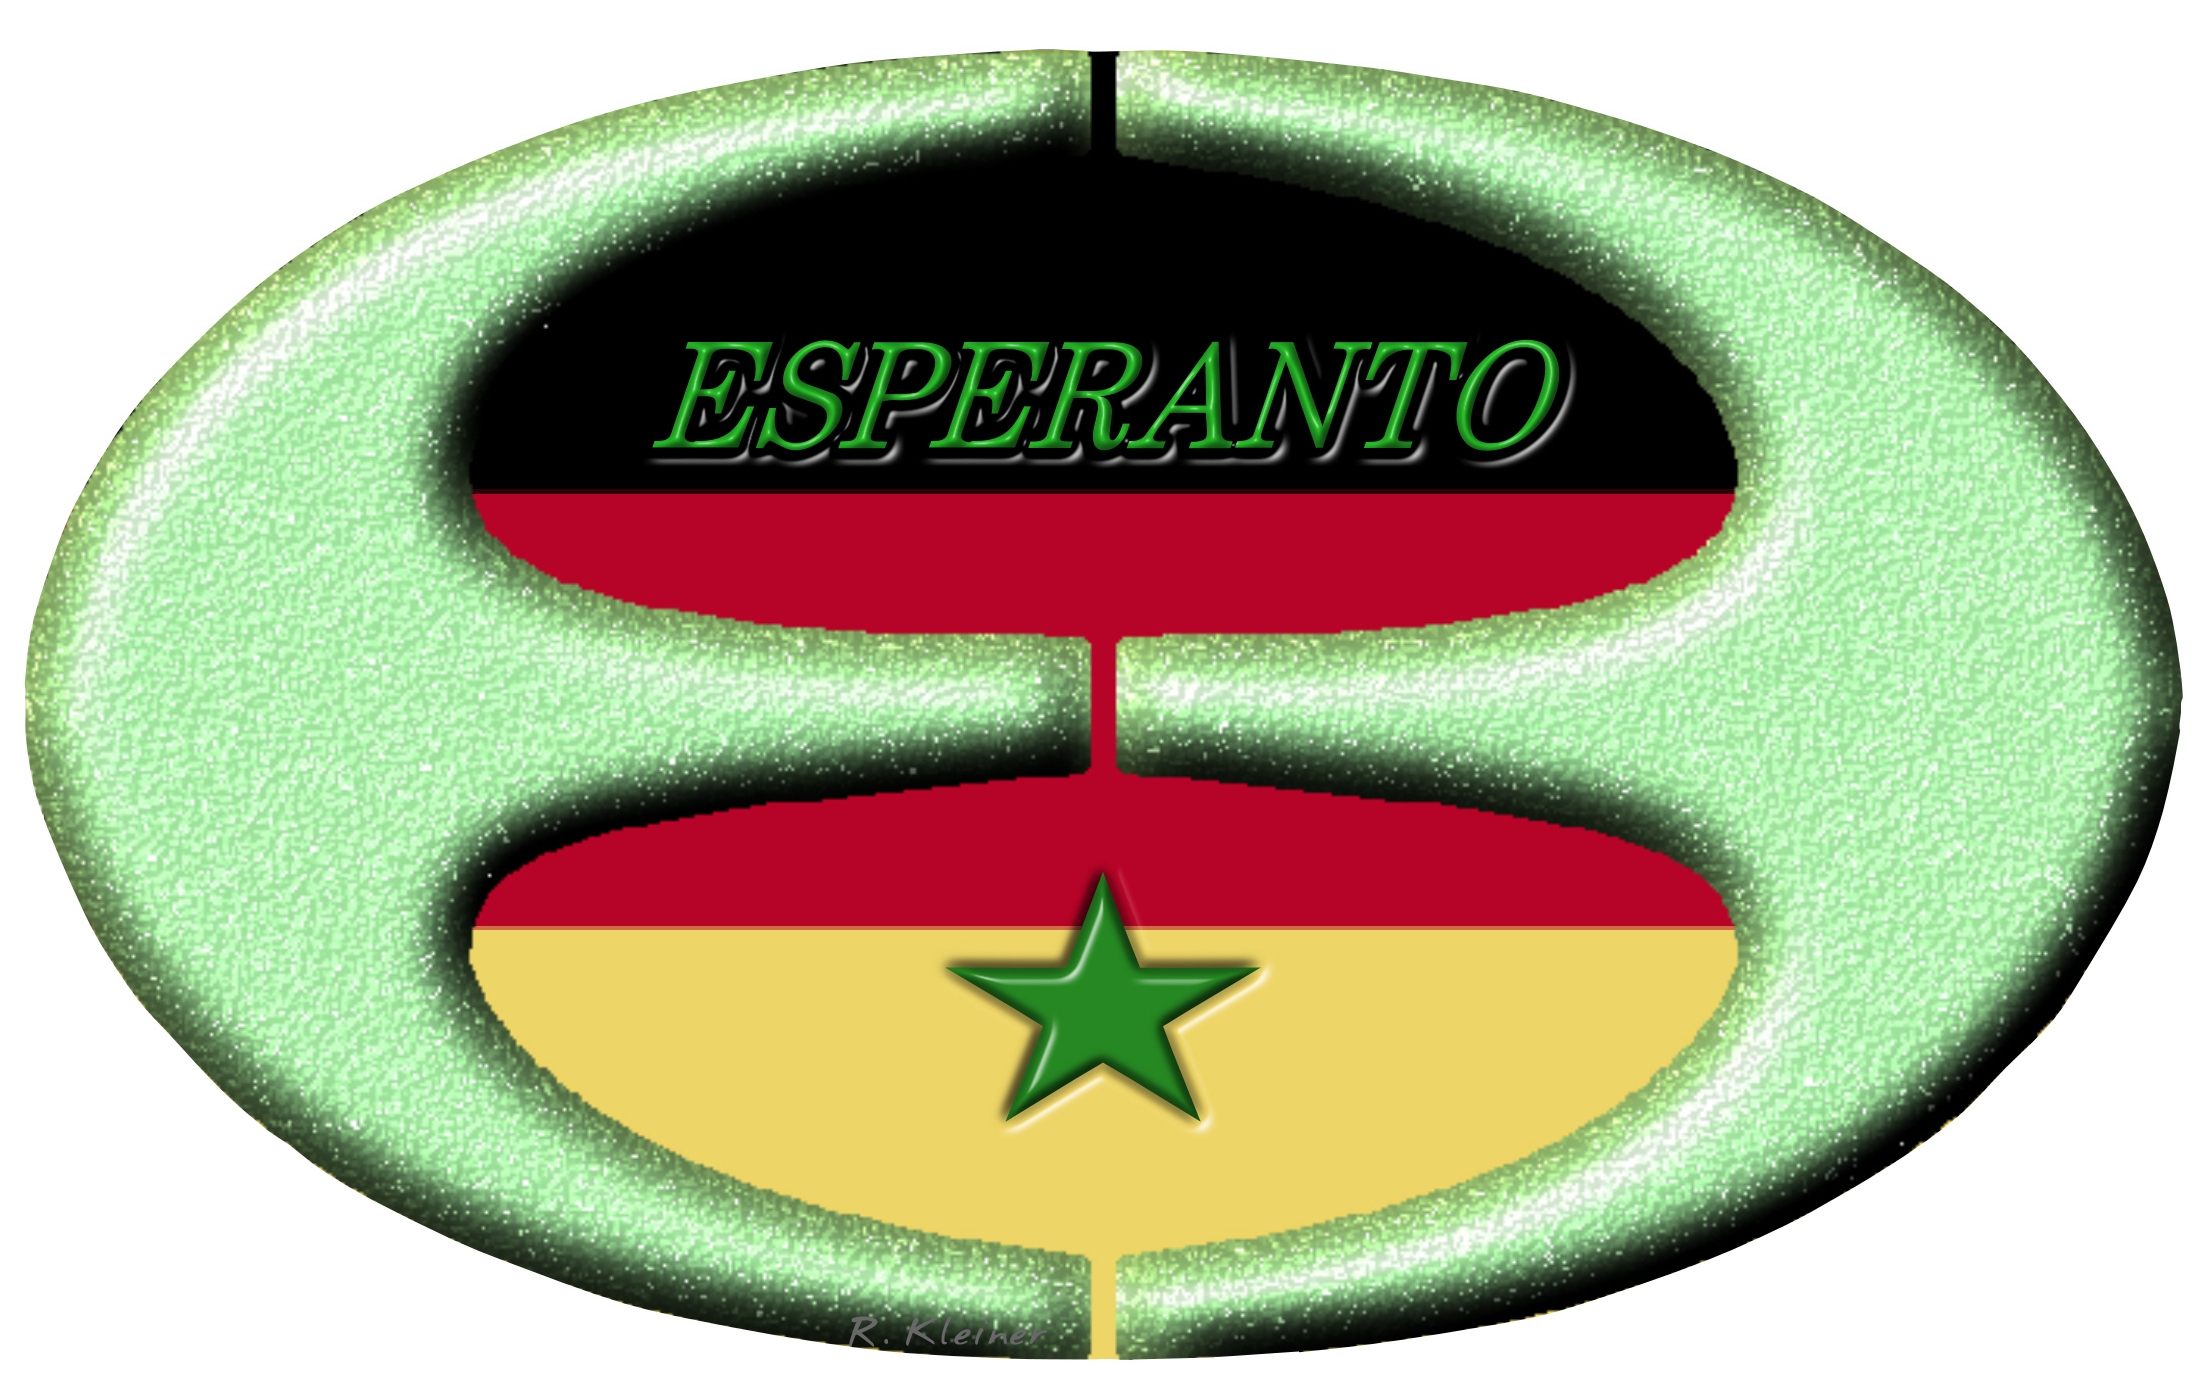 Esperanto-Ei mit grner Esperanto-Schrift und grnem Stern und deutscher Fahne im HintergrundEsperanto-Ei mit Schrift und Stern mit deutscher Fahne im Hintergrund